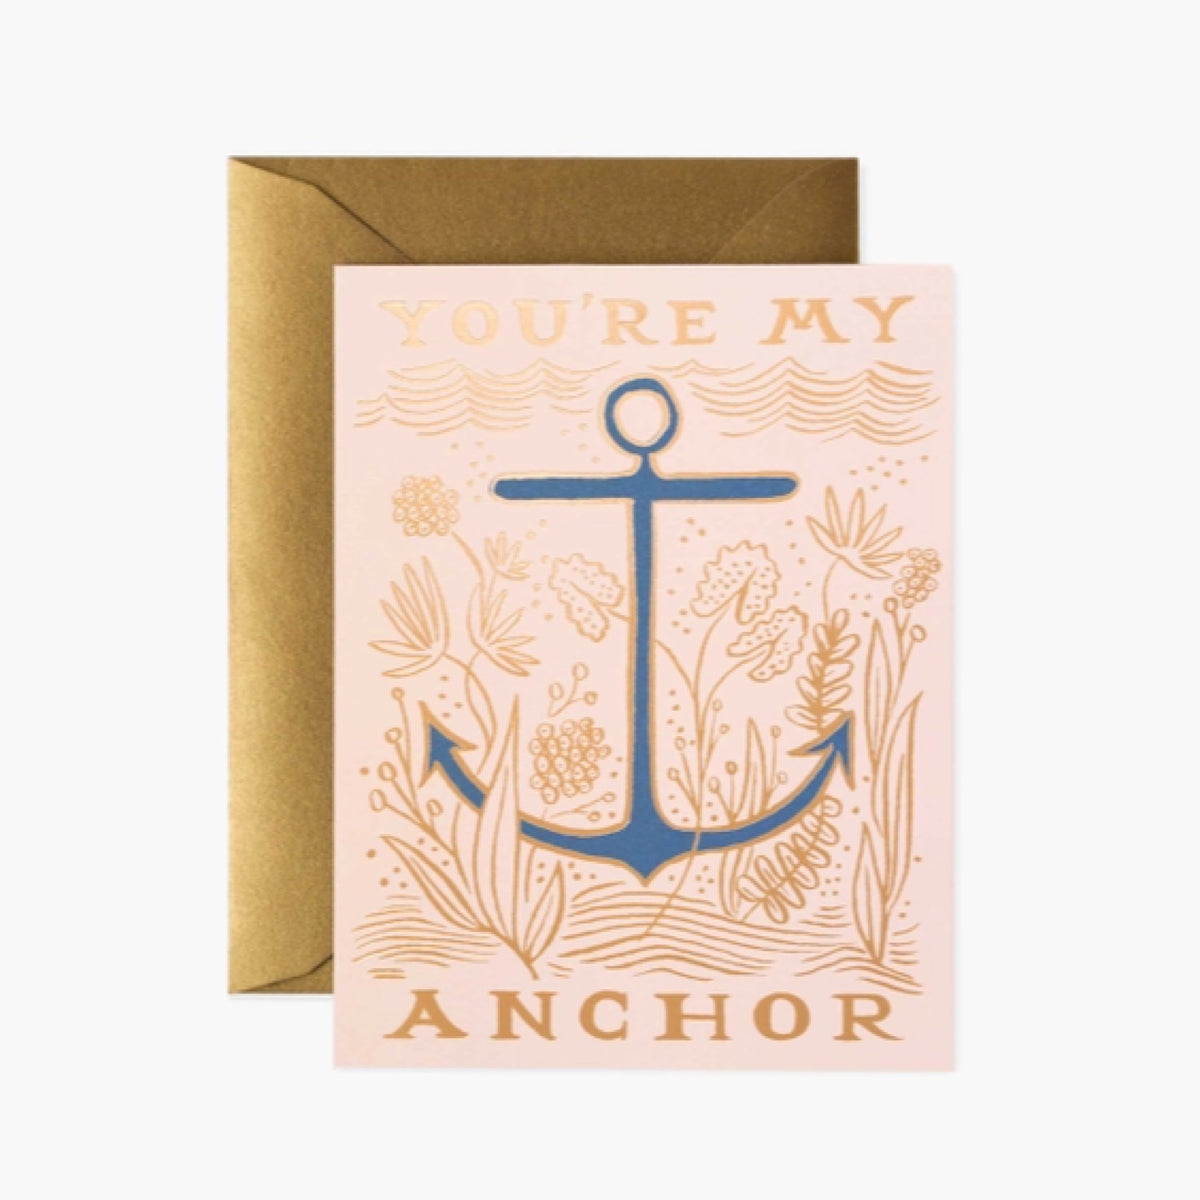 My Anchor Card